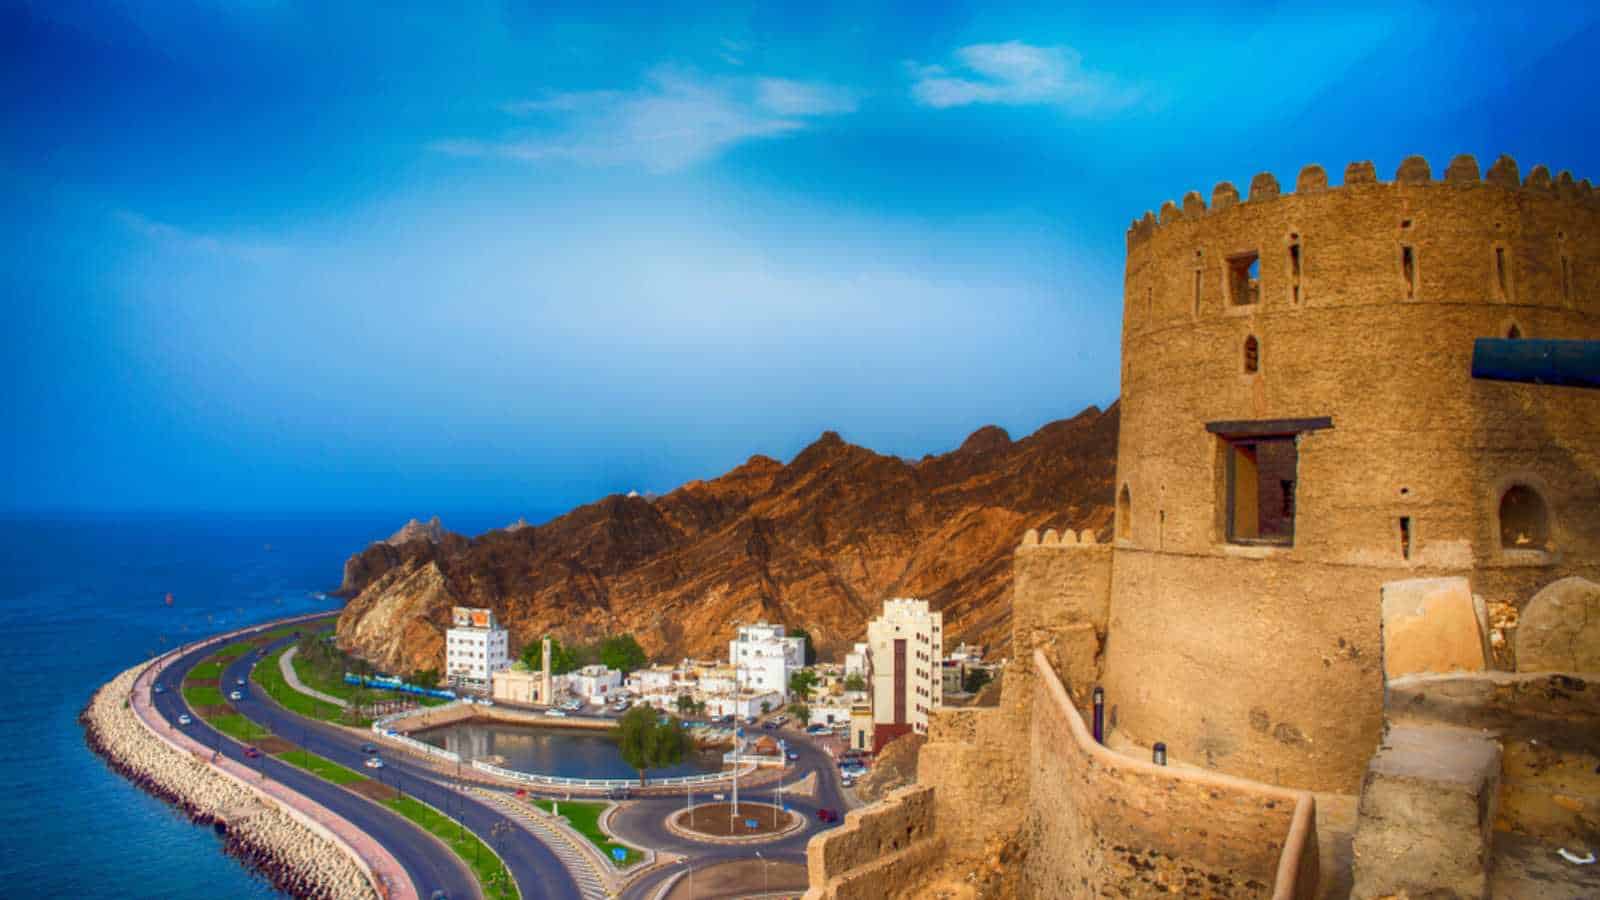 Landscap of Mutrah Corniche in Muscat, Oman